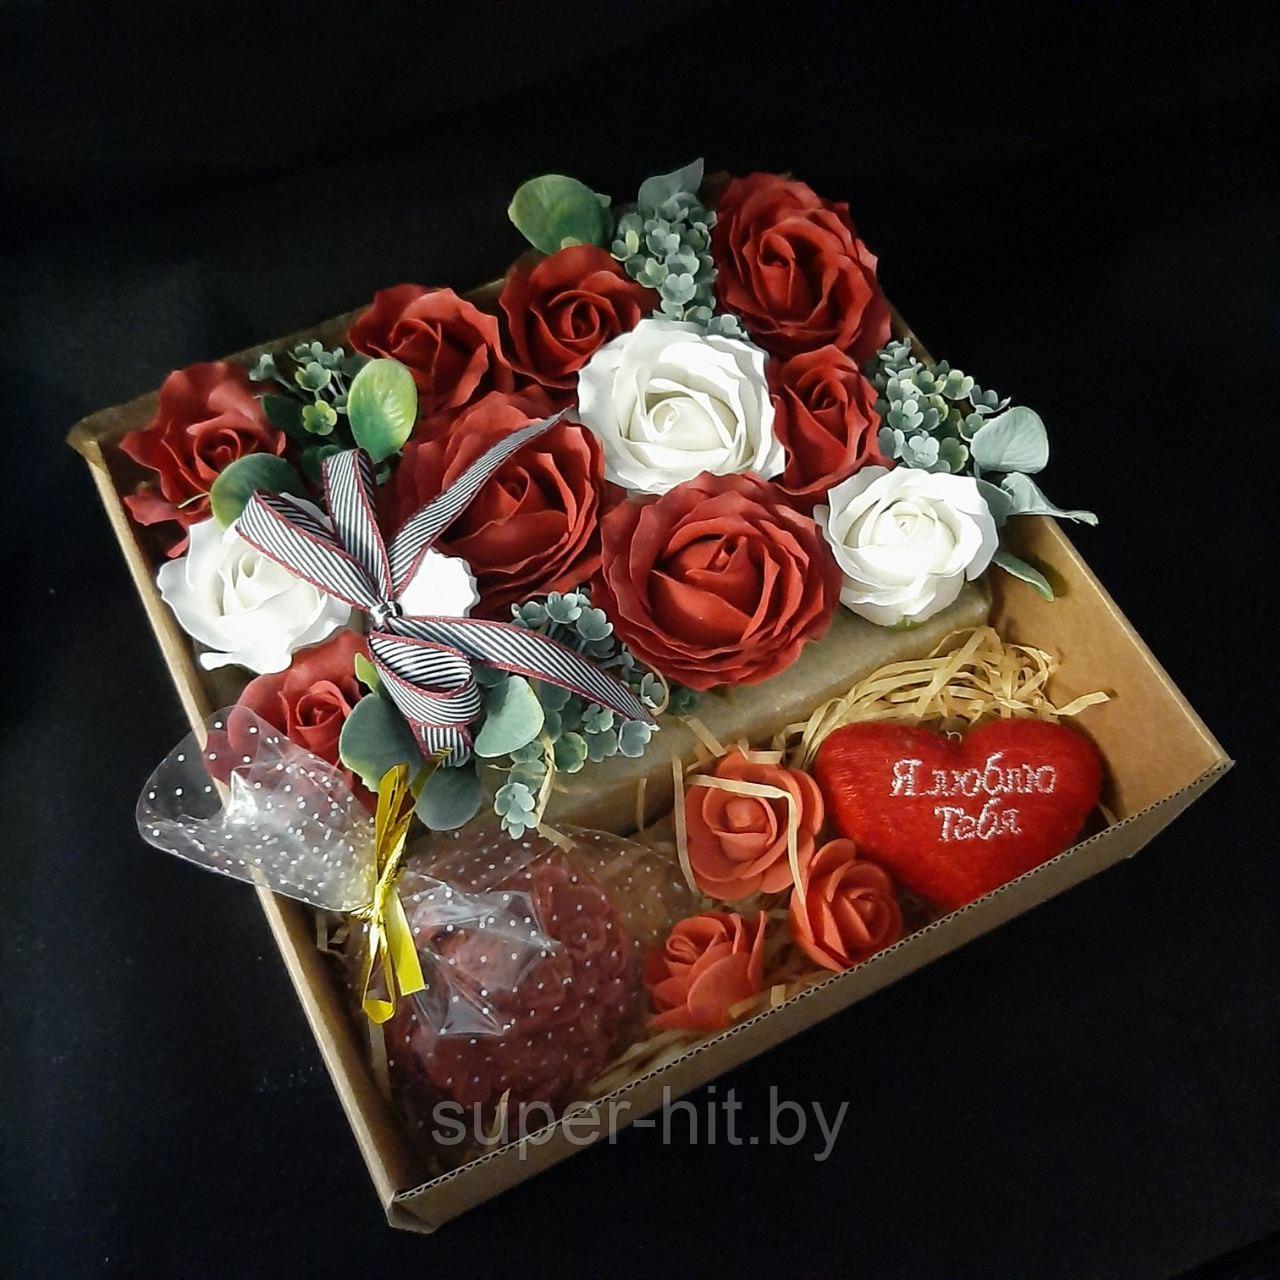 Подарочный набор  «МОЕМУ АНГЕЛУ»  (композиция роз из мыла в подарочной коробке)